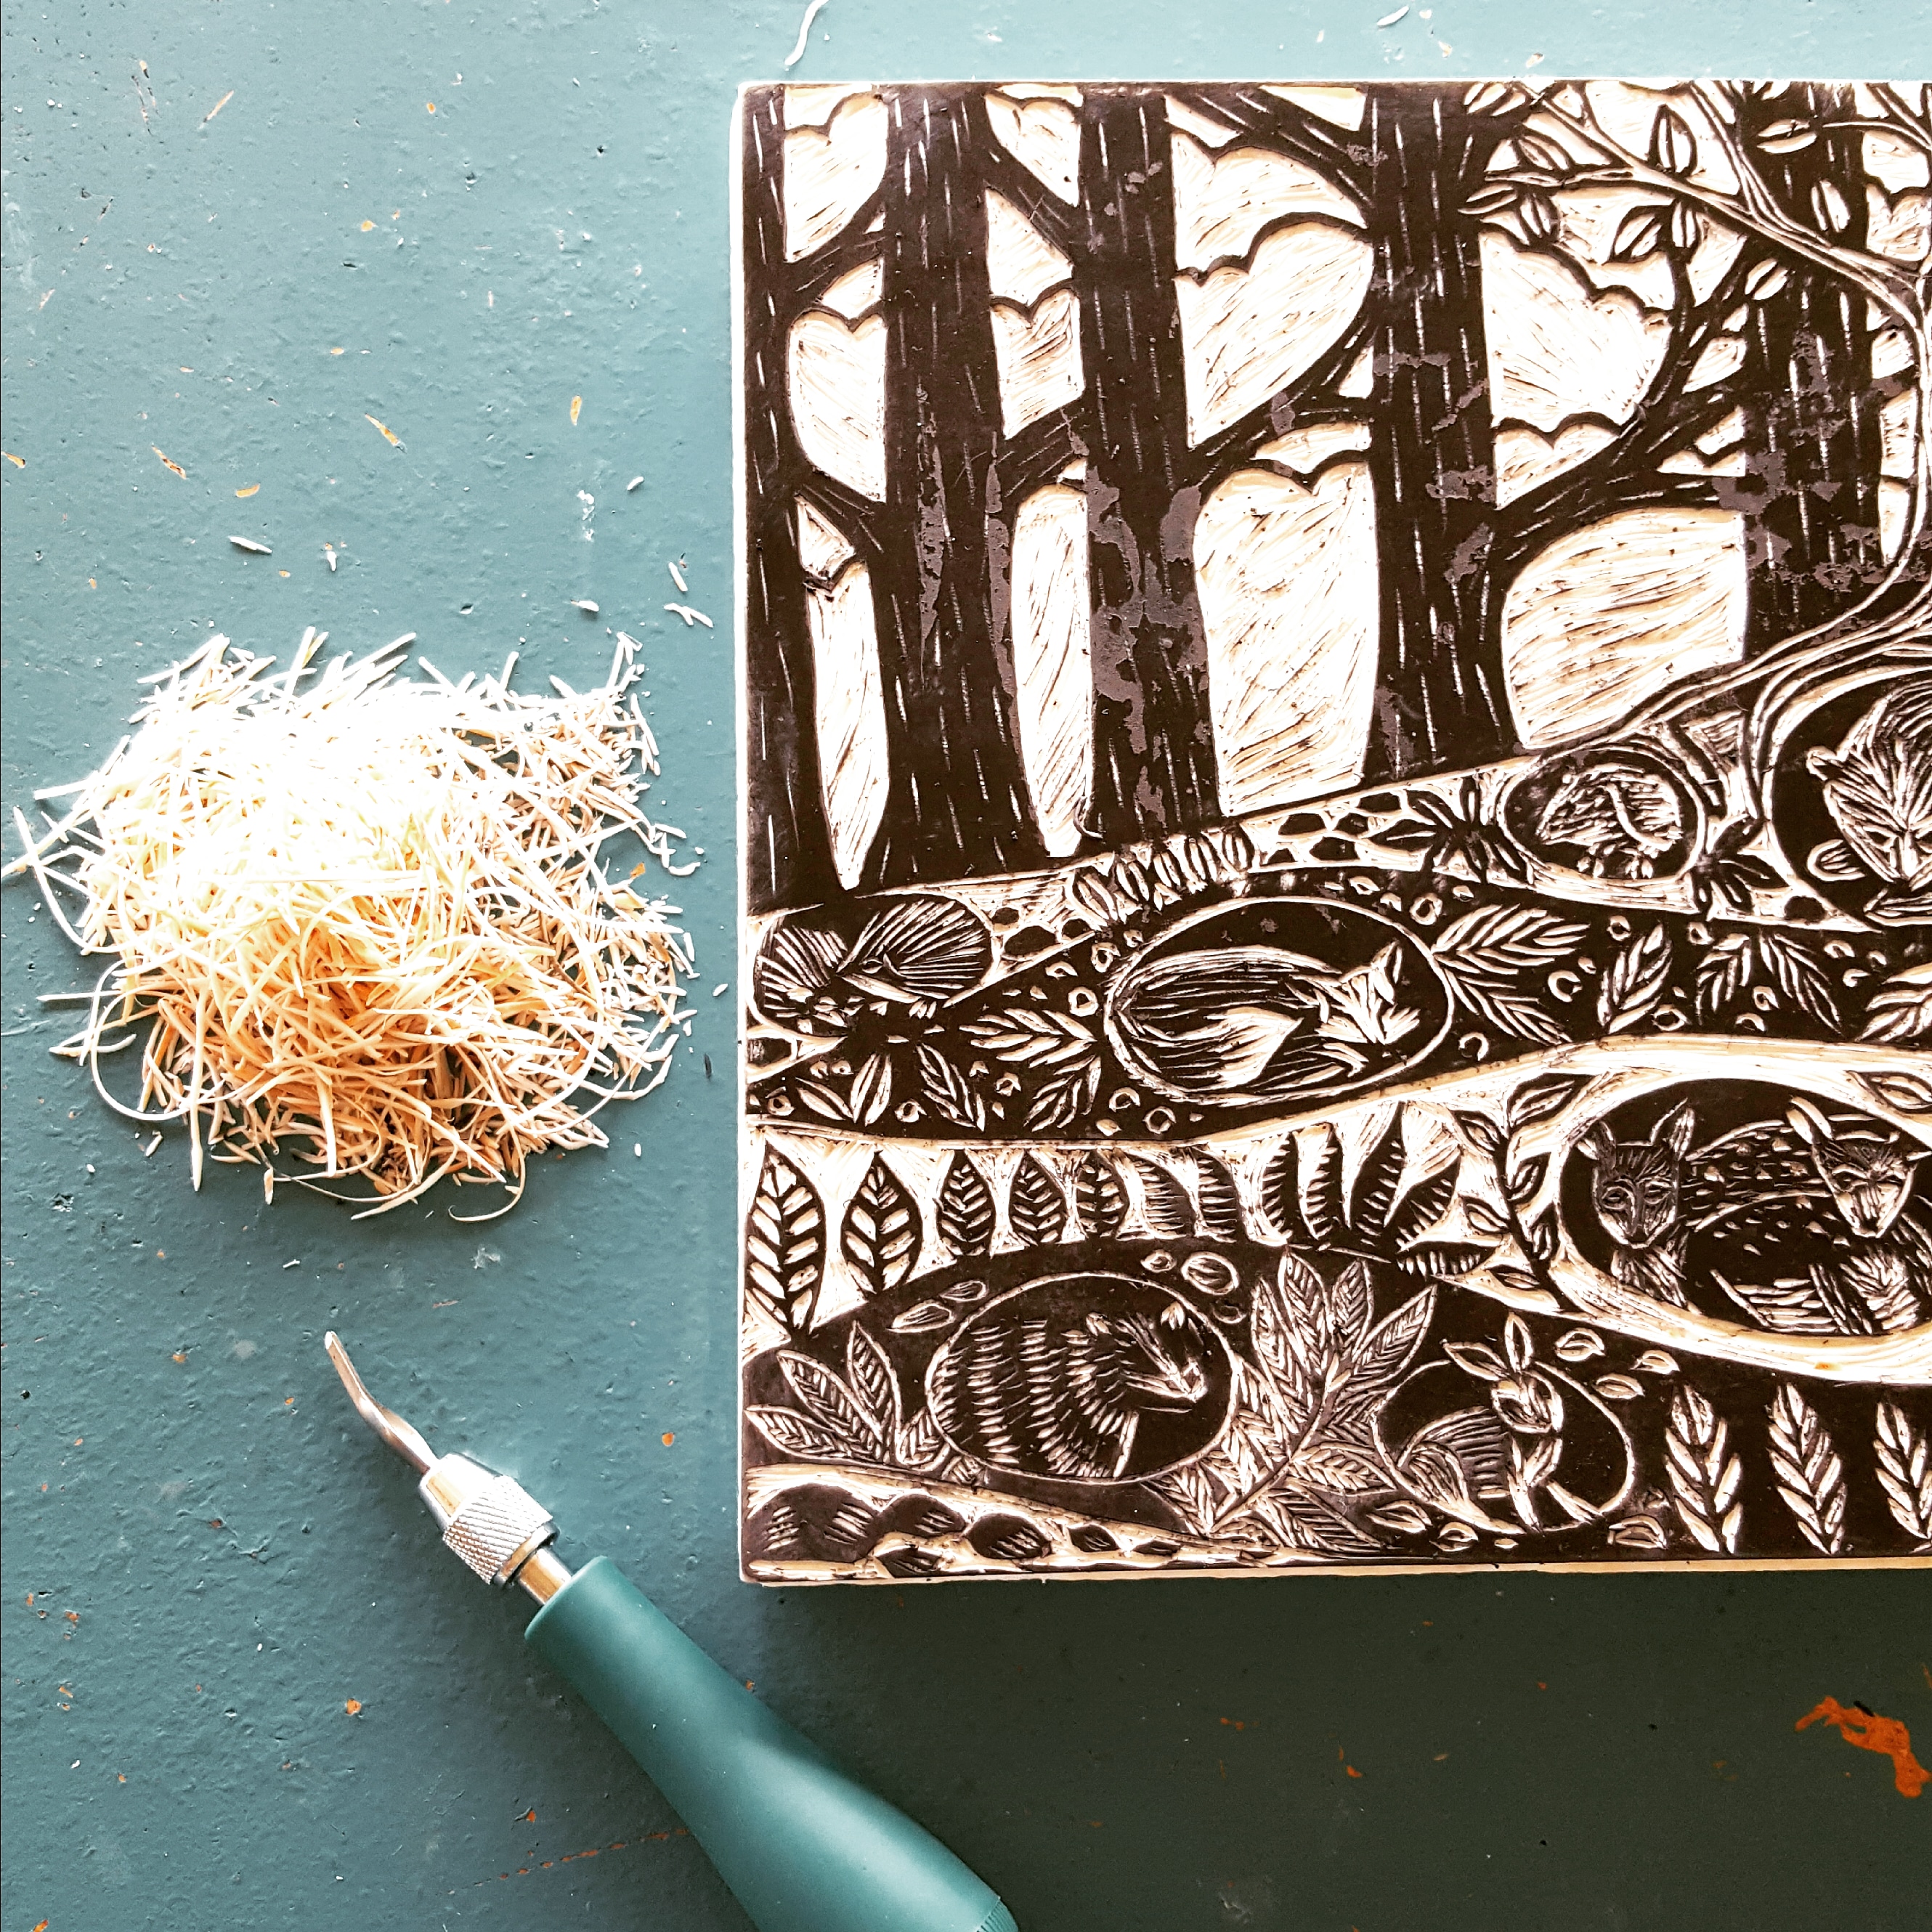 Make an Impression: A Stamp Carving Workshop